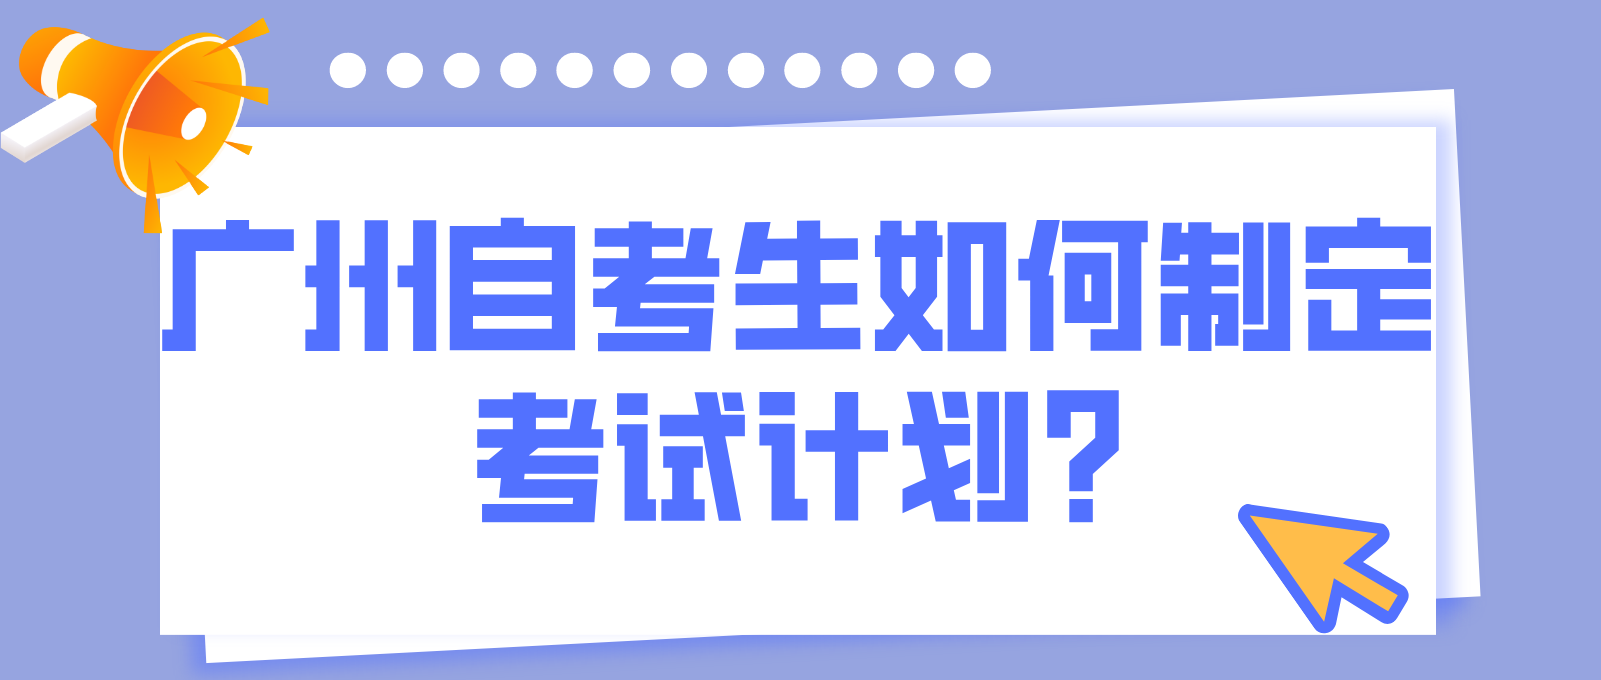 广州自考生如何制定考试计划?